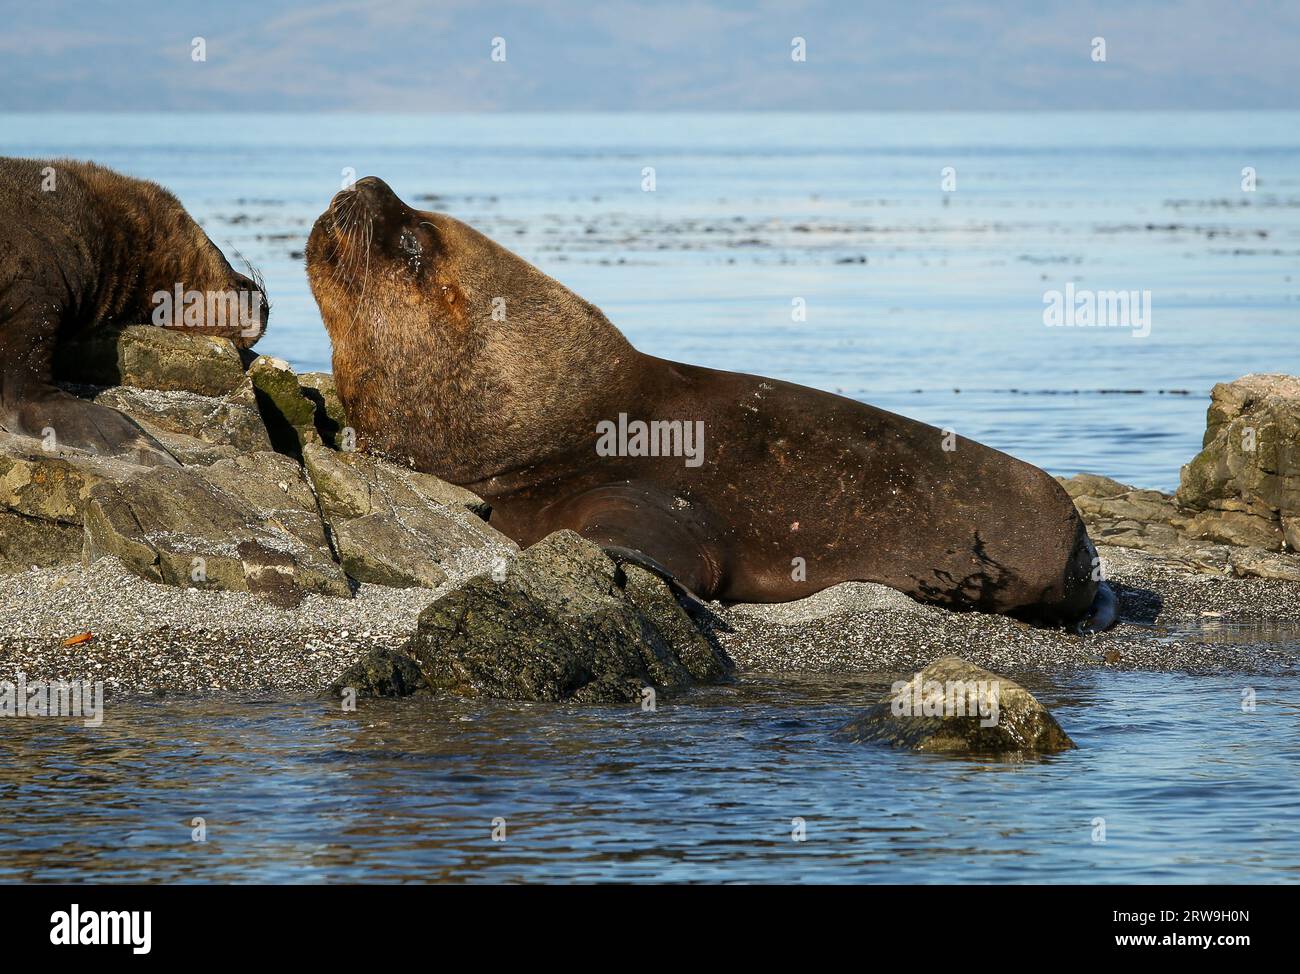 Enorme maschio leone marino sudamericano (Otaria flavescens), parco marino Francisco Coloane, area ambientale protetta per la ricerca scientifica, Patagonia Foto Stock